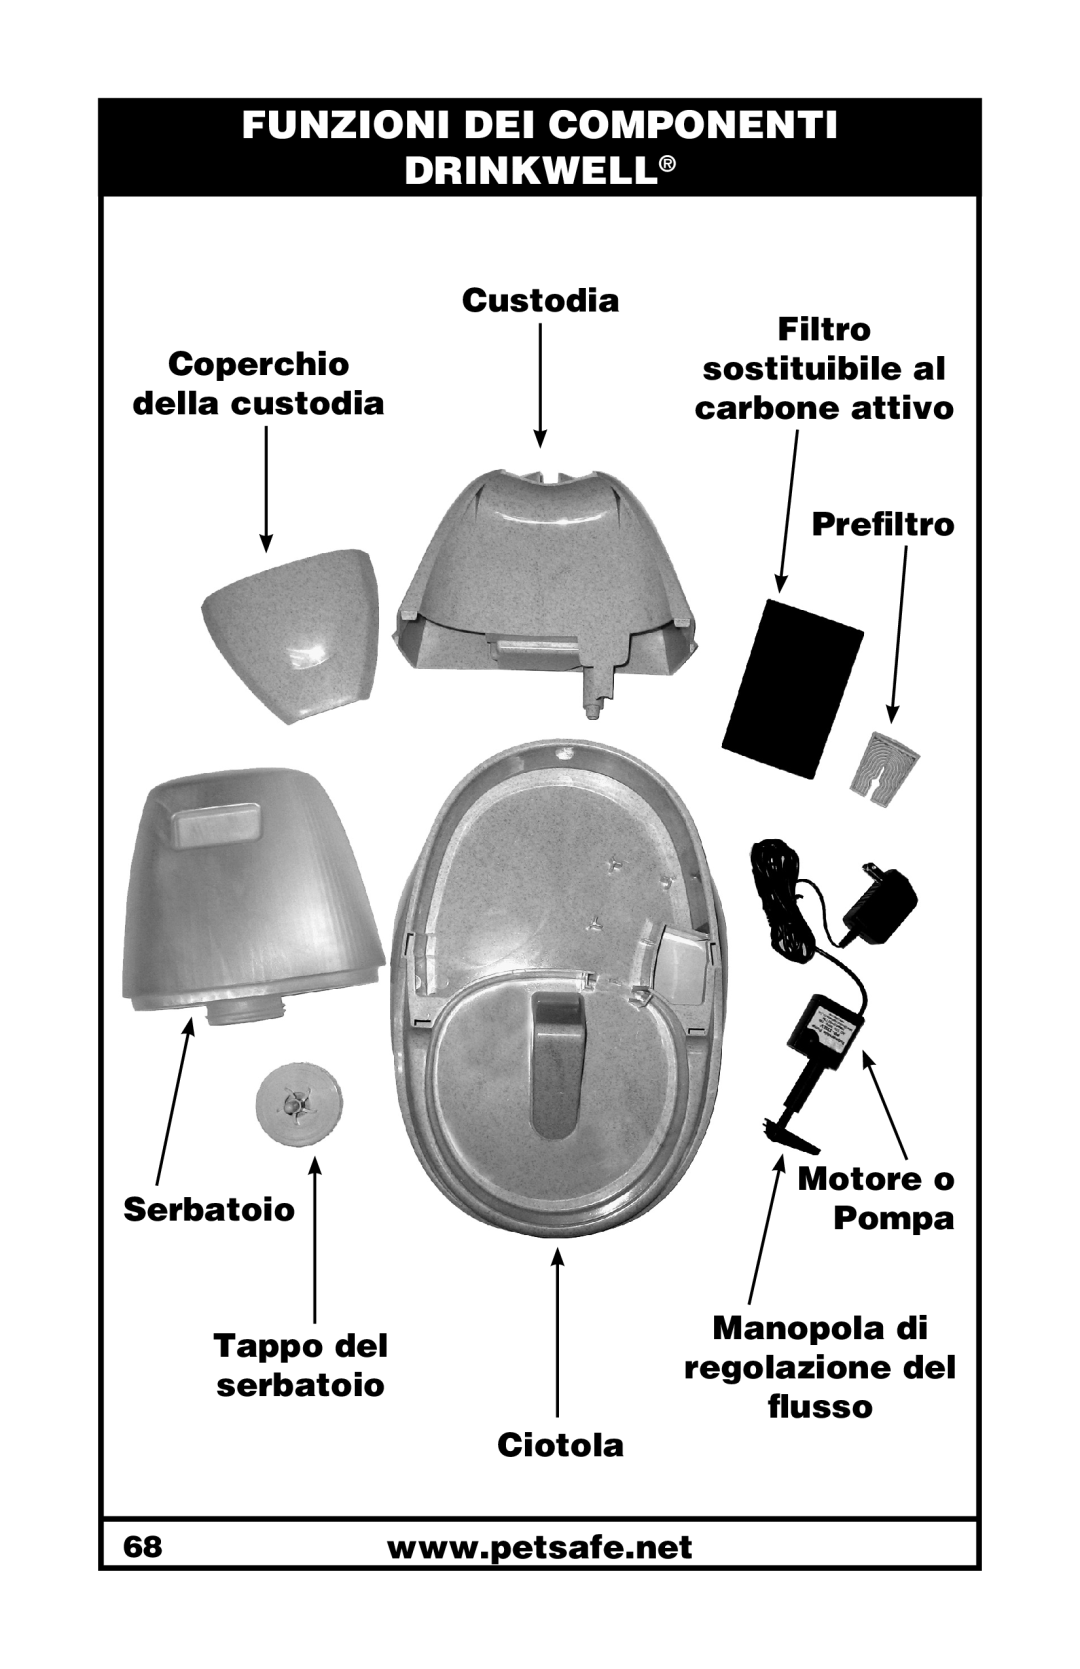 Petsafe 400-1255-19 Funzioni Dei Componenti Drinkwell, Coperchio della custodia Serbatoio Tappo del serbatoio 